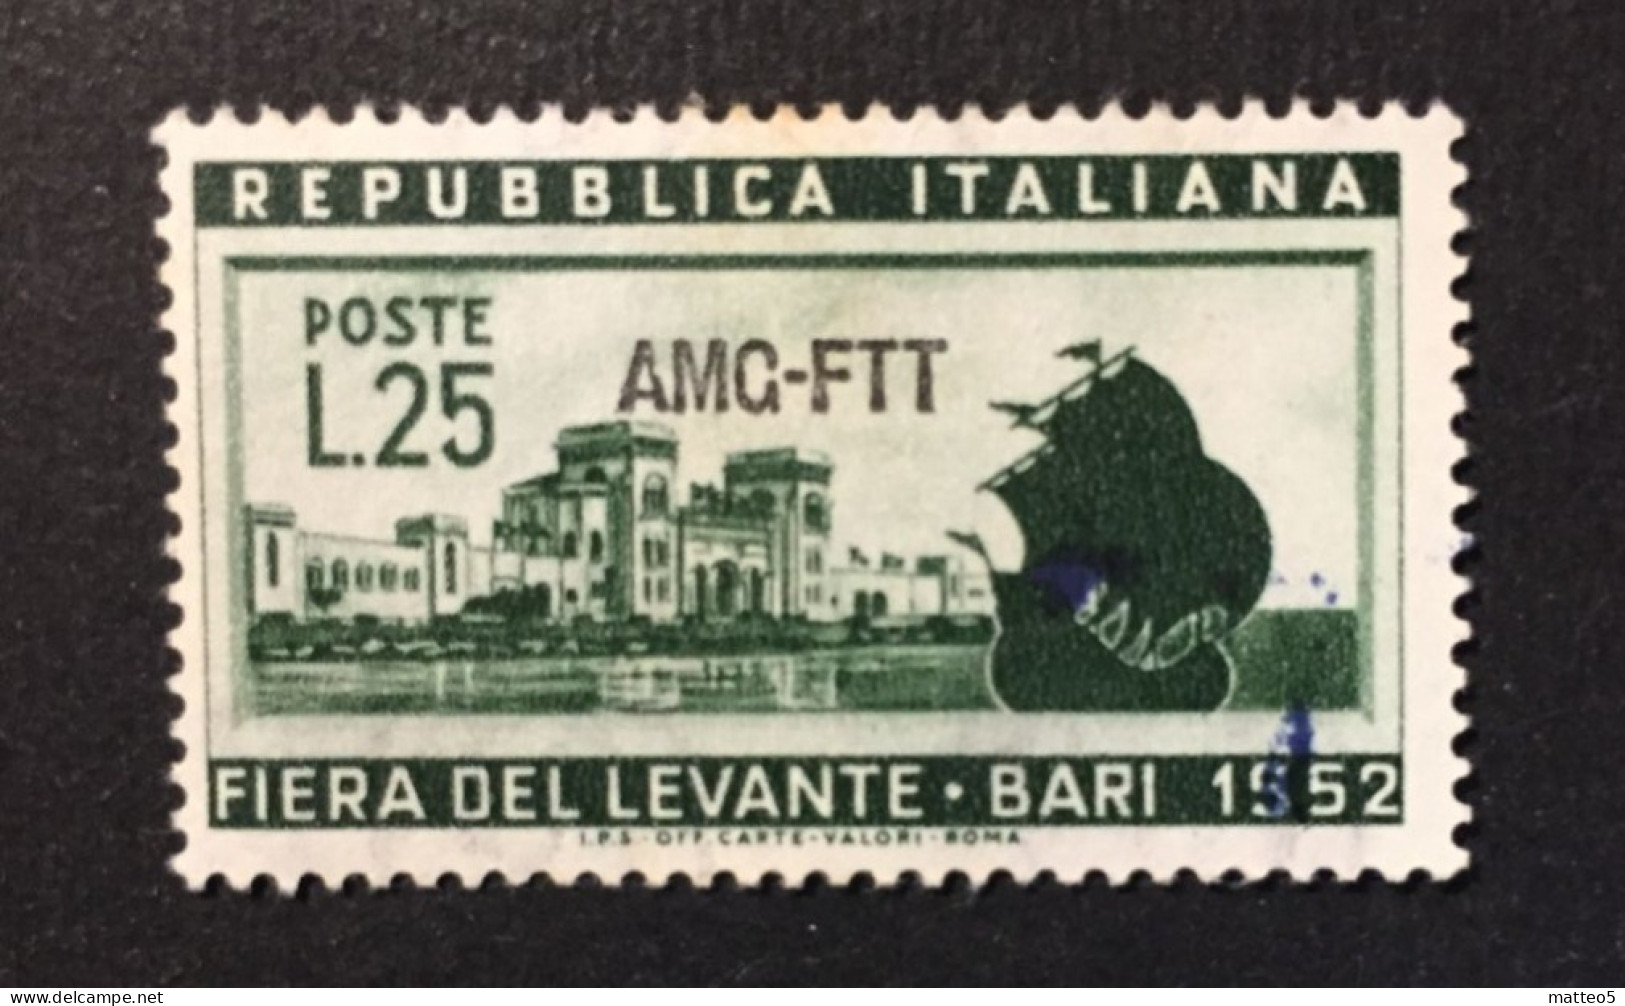 1952 - Italia Trieste AMG-FTT - Fiera Del Levante Bari  - A1 - Neufs